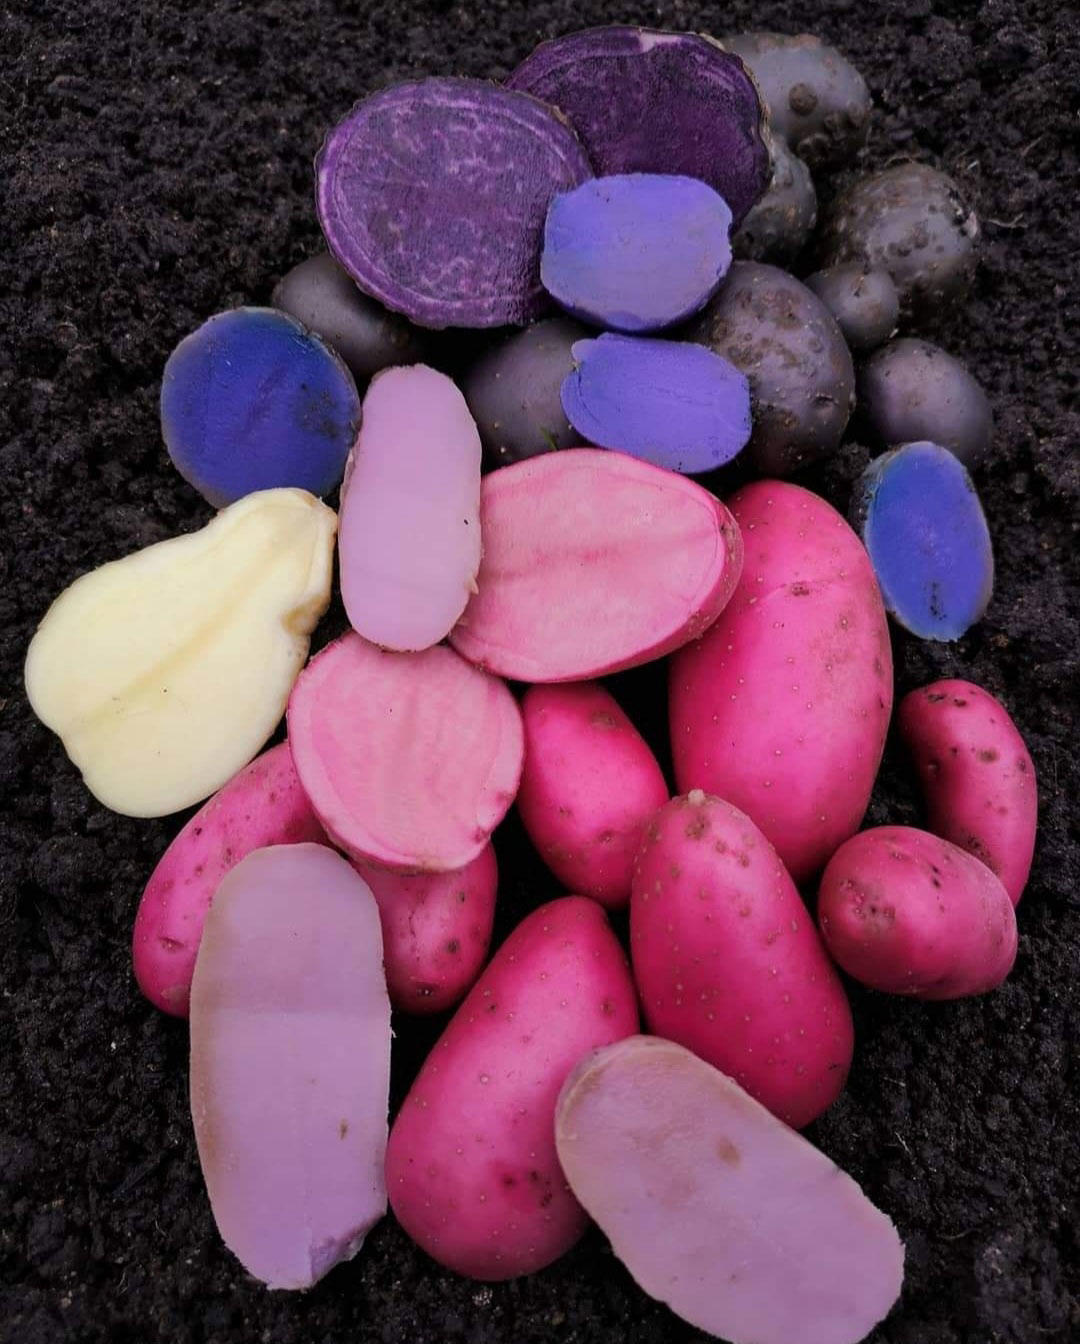 Farvede kartofler - pink emmalie, blaa anneliese